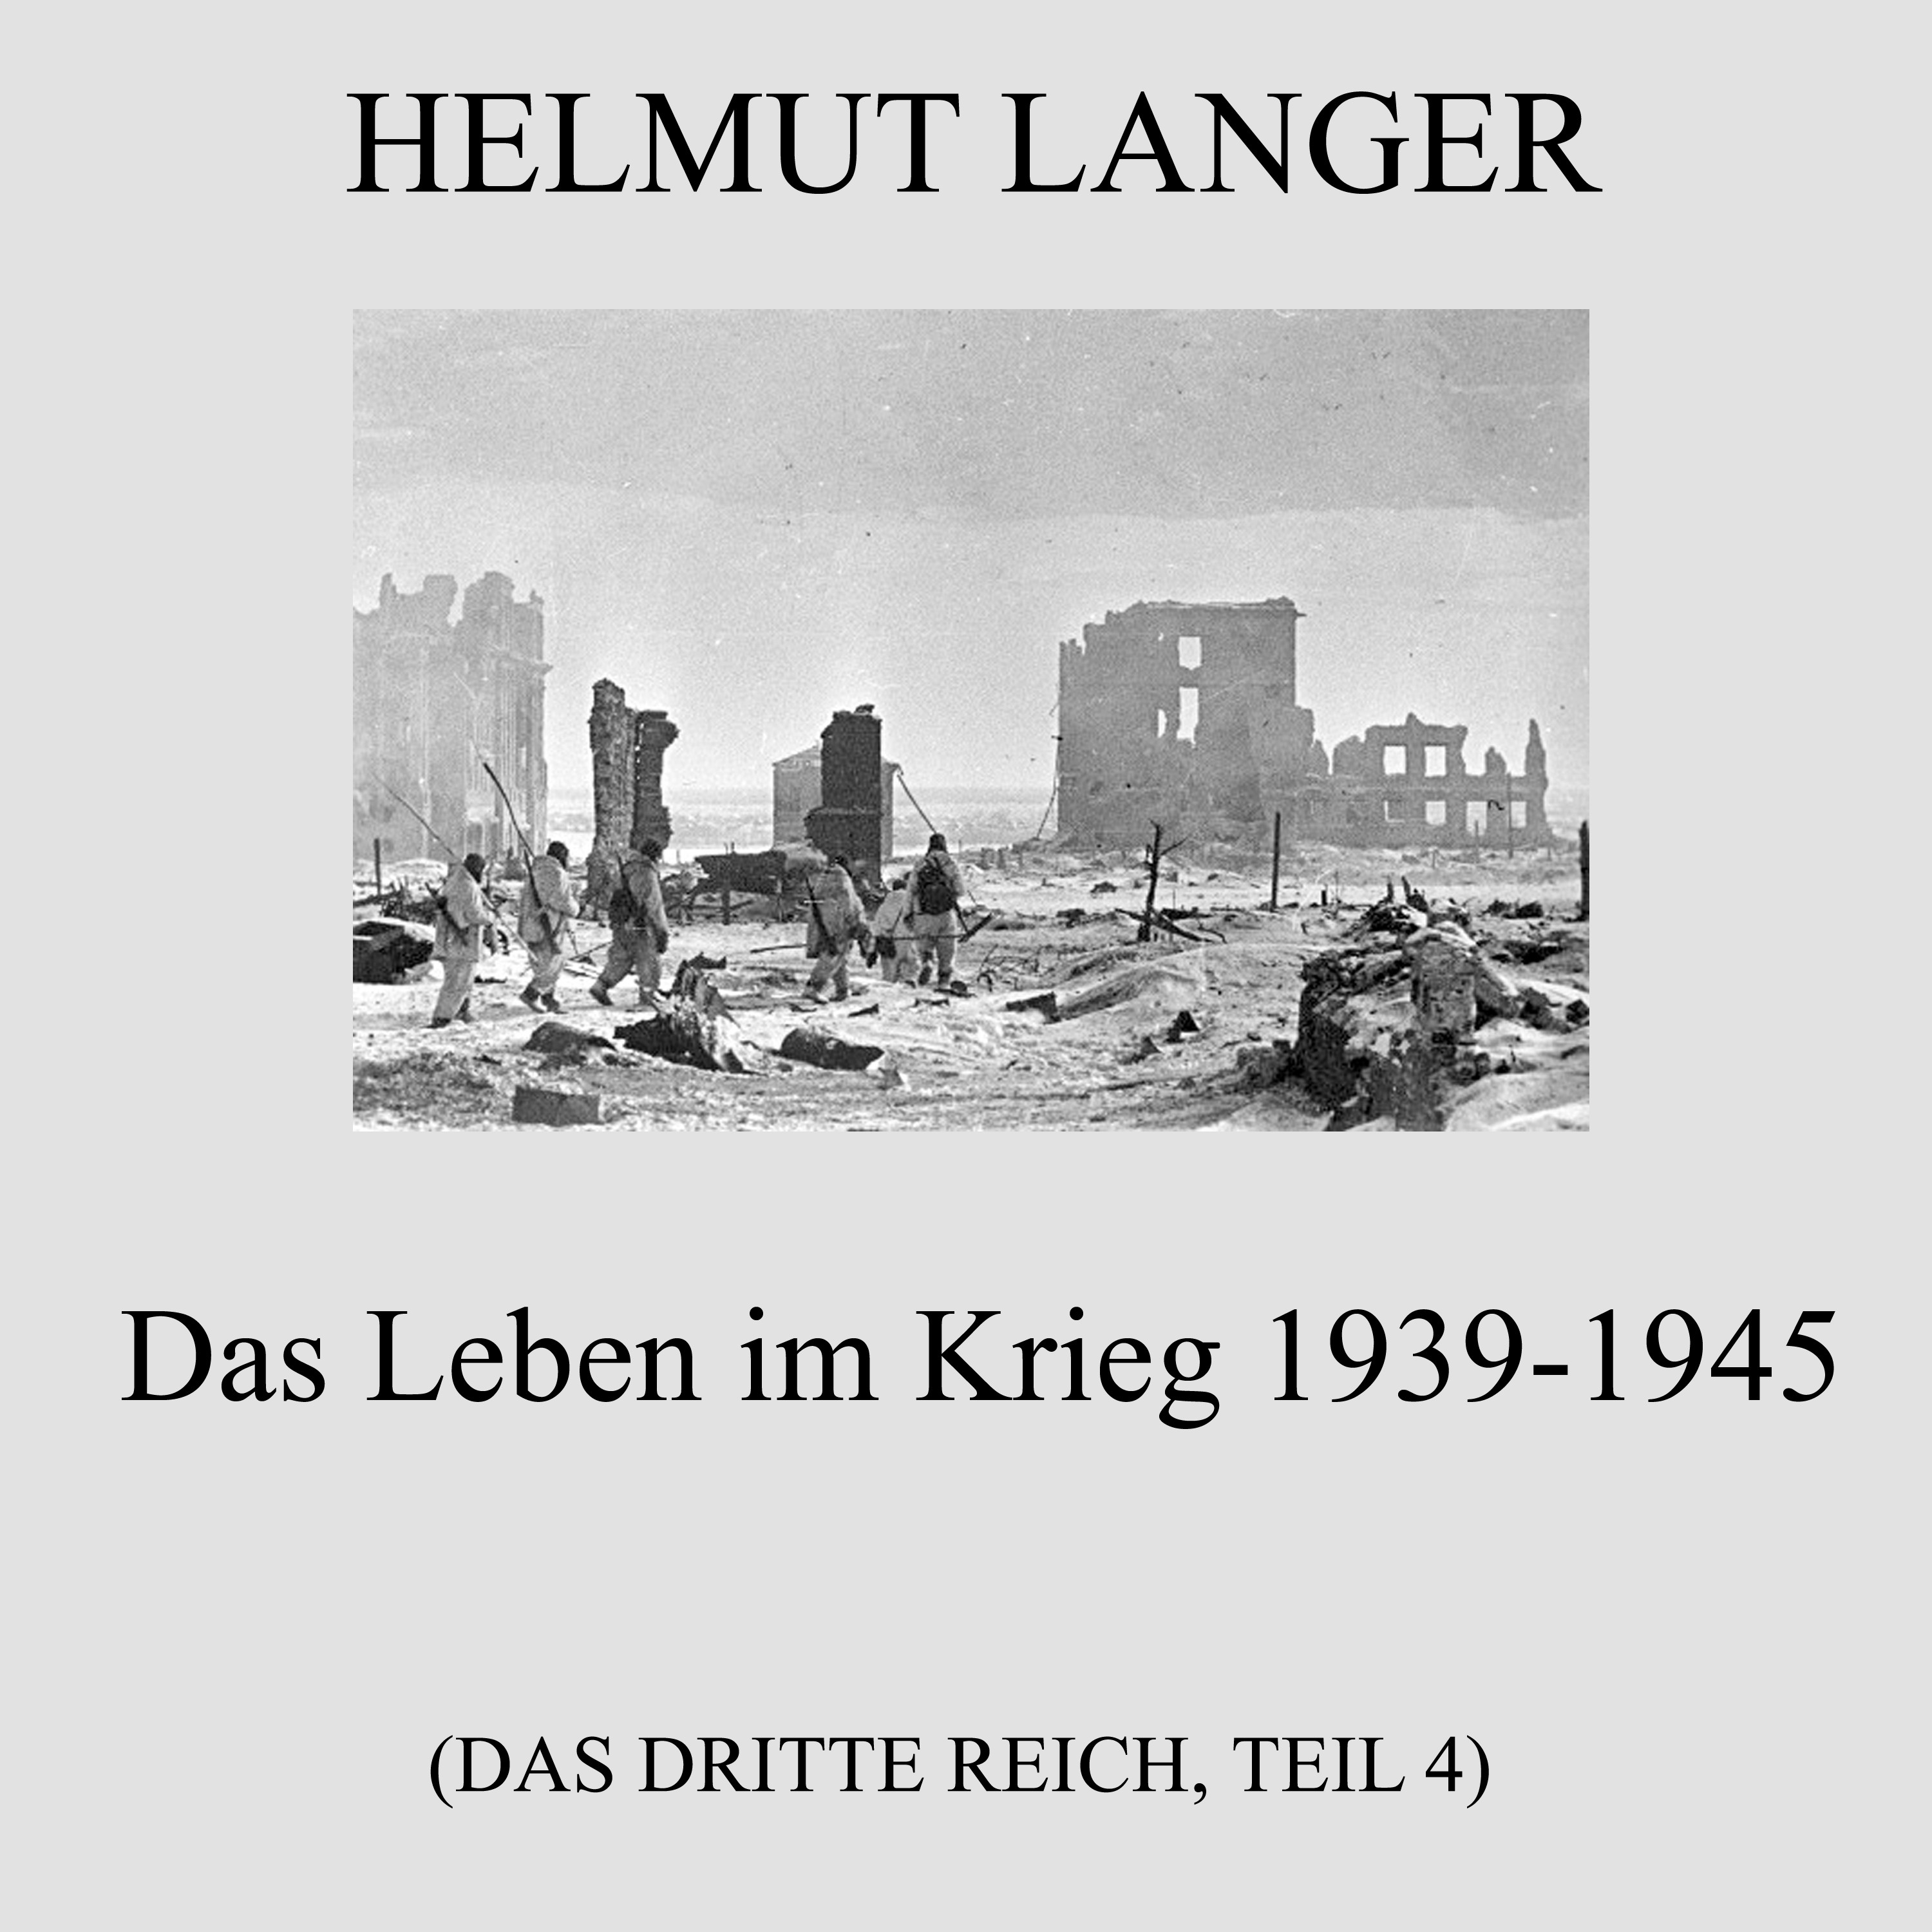 Das Leben im Krieg 1939-1945 (Das Dritte Reich - Teil 4)